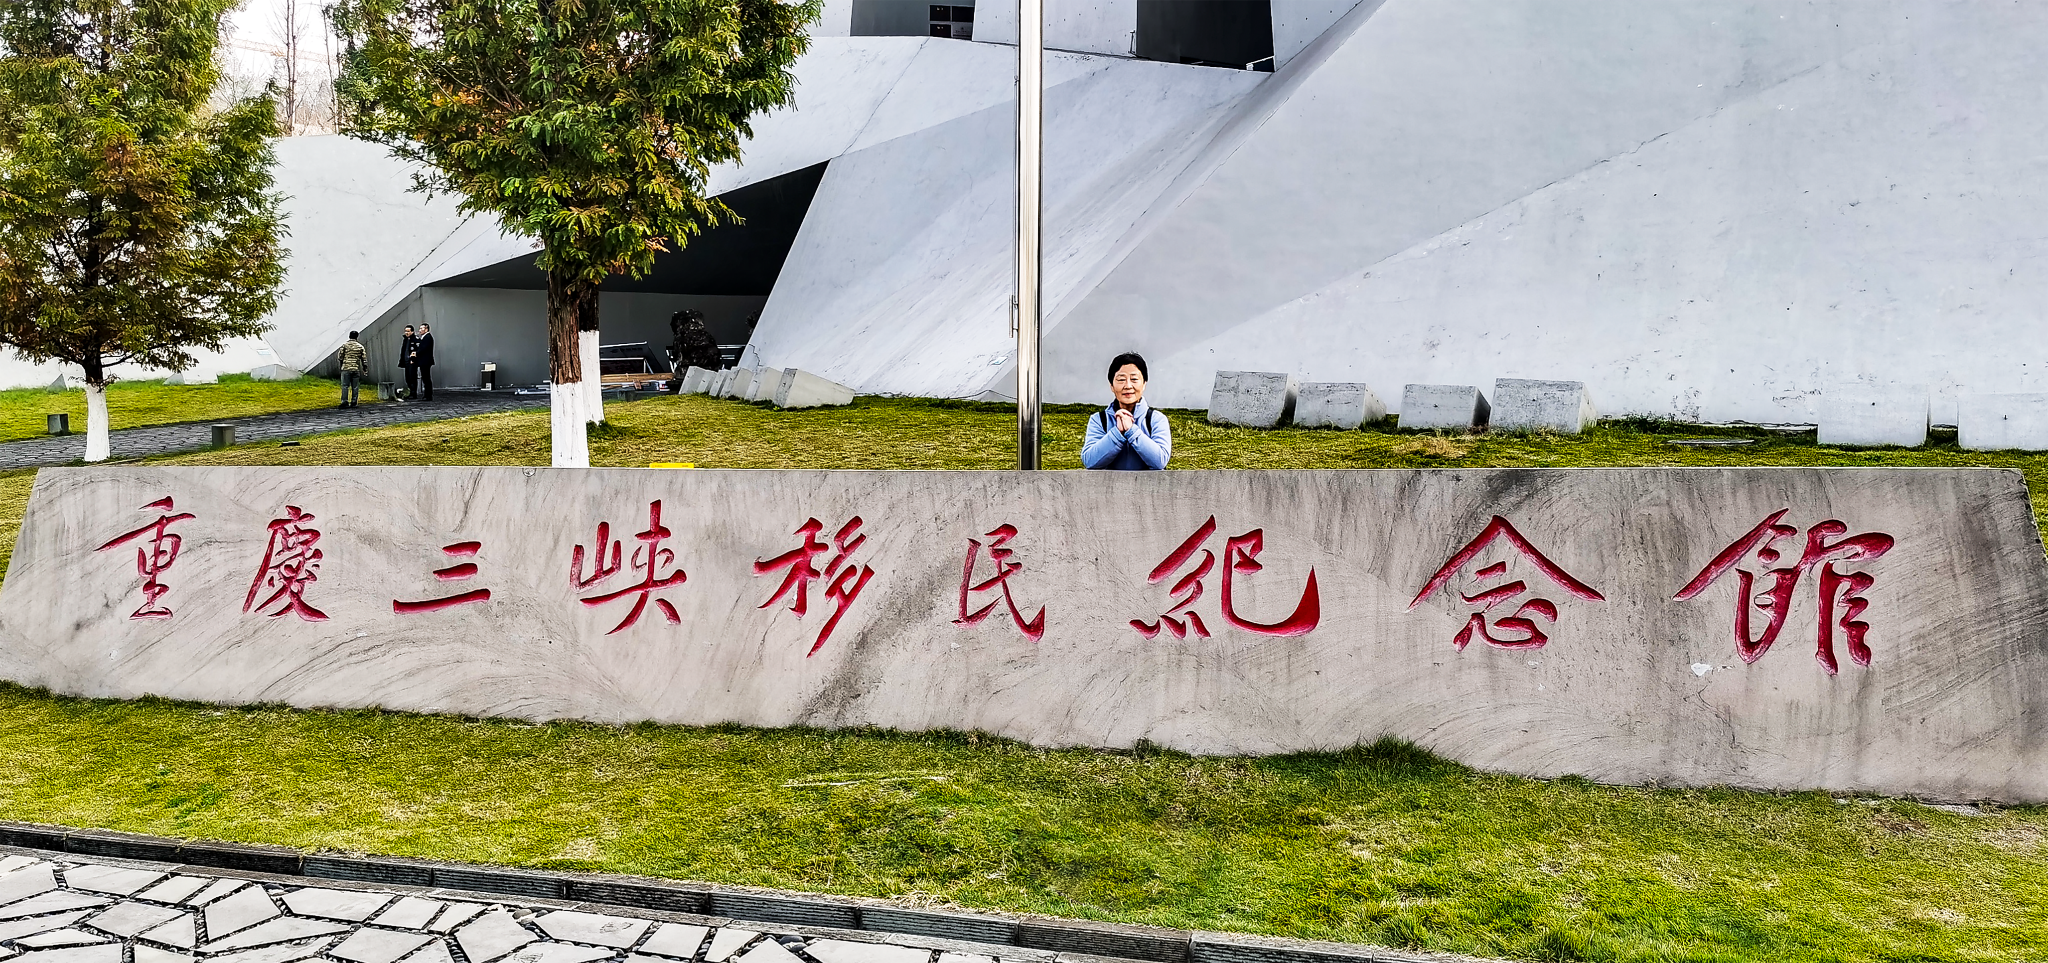 重庆三峡移民纪念馆重庆三峡移民纪念馆重庆三峡移民纪念馆重庆三峡